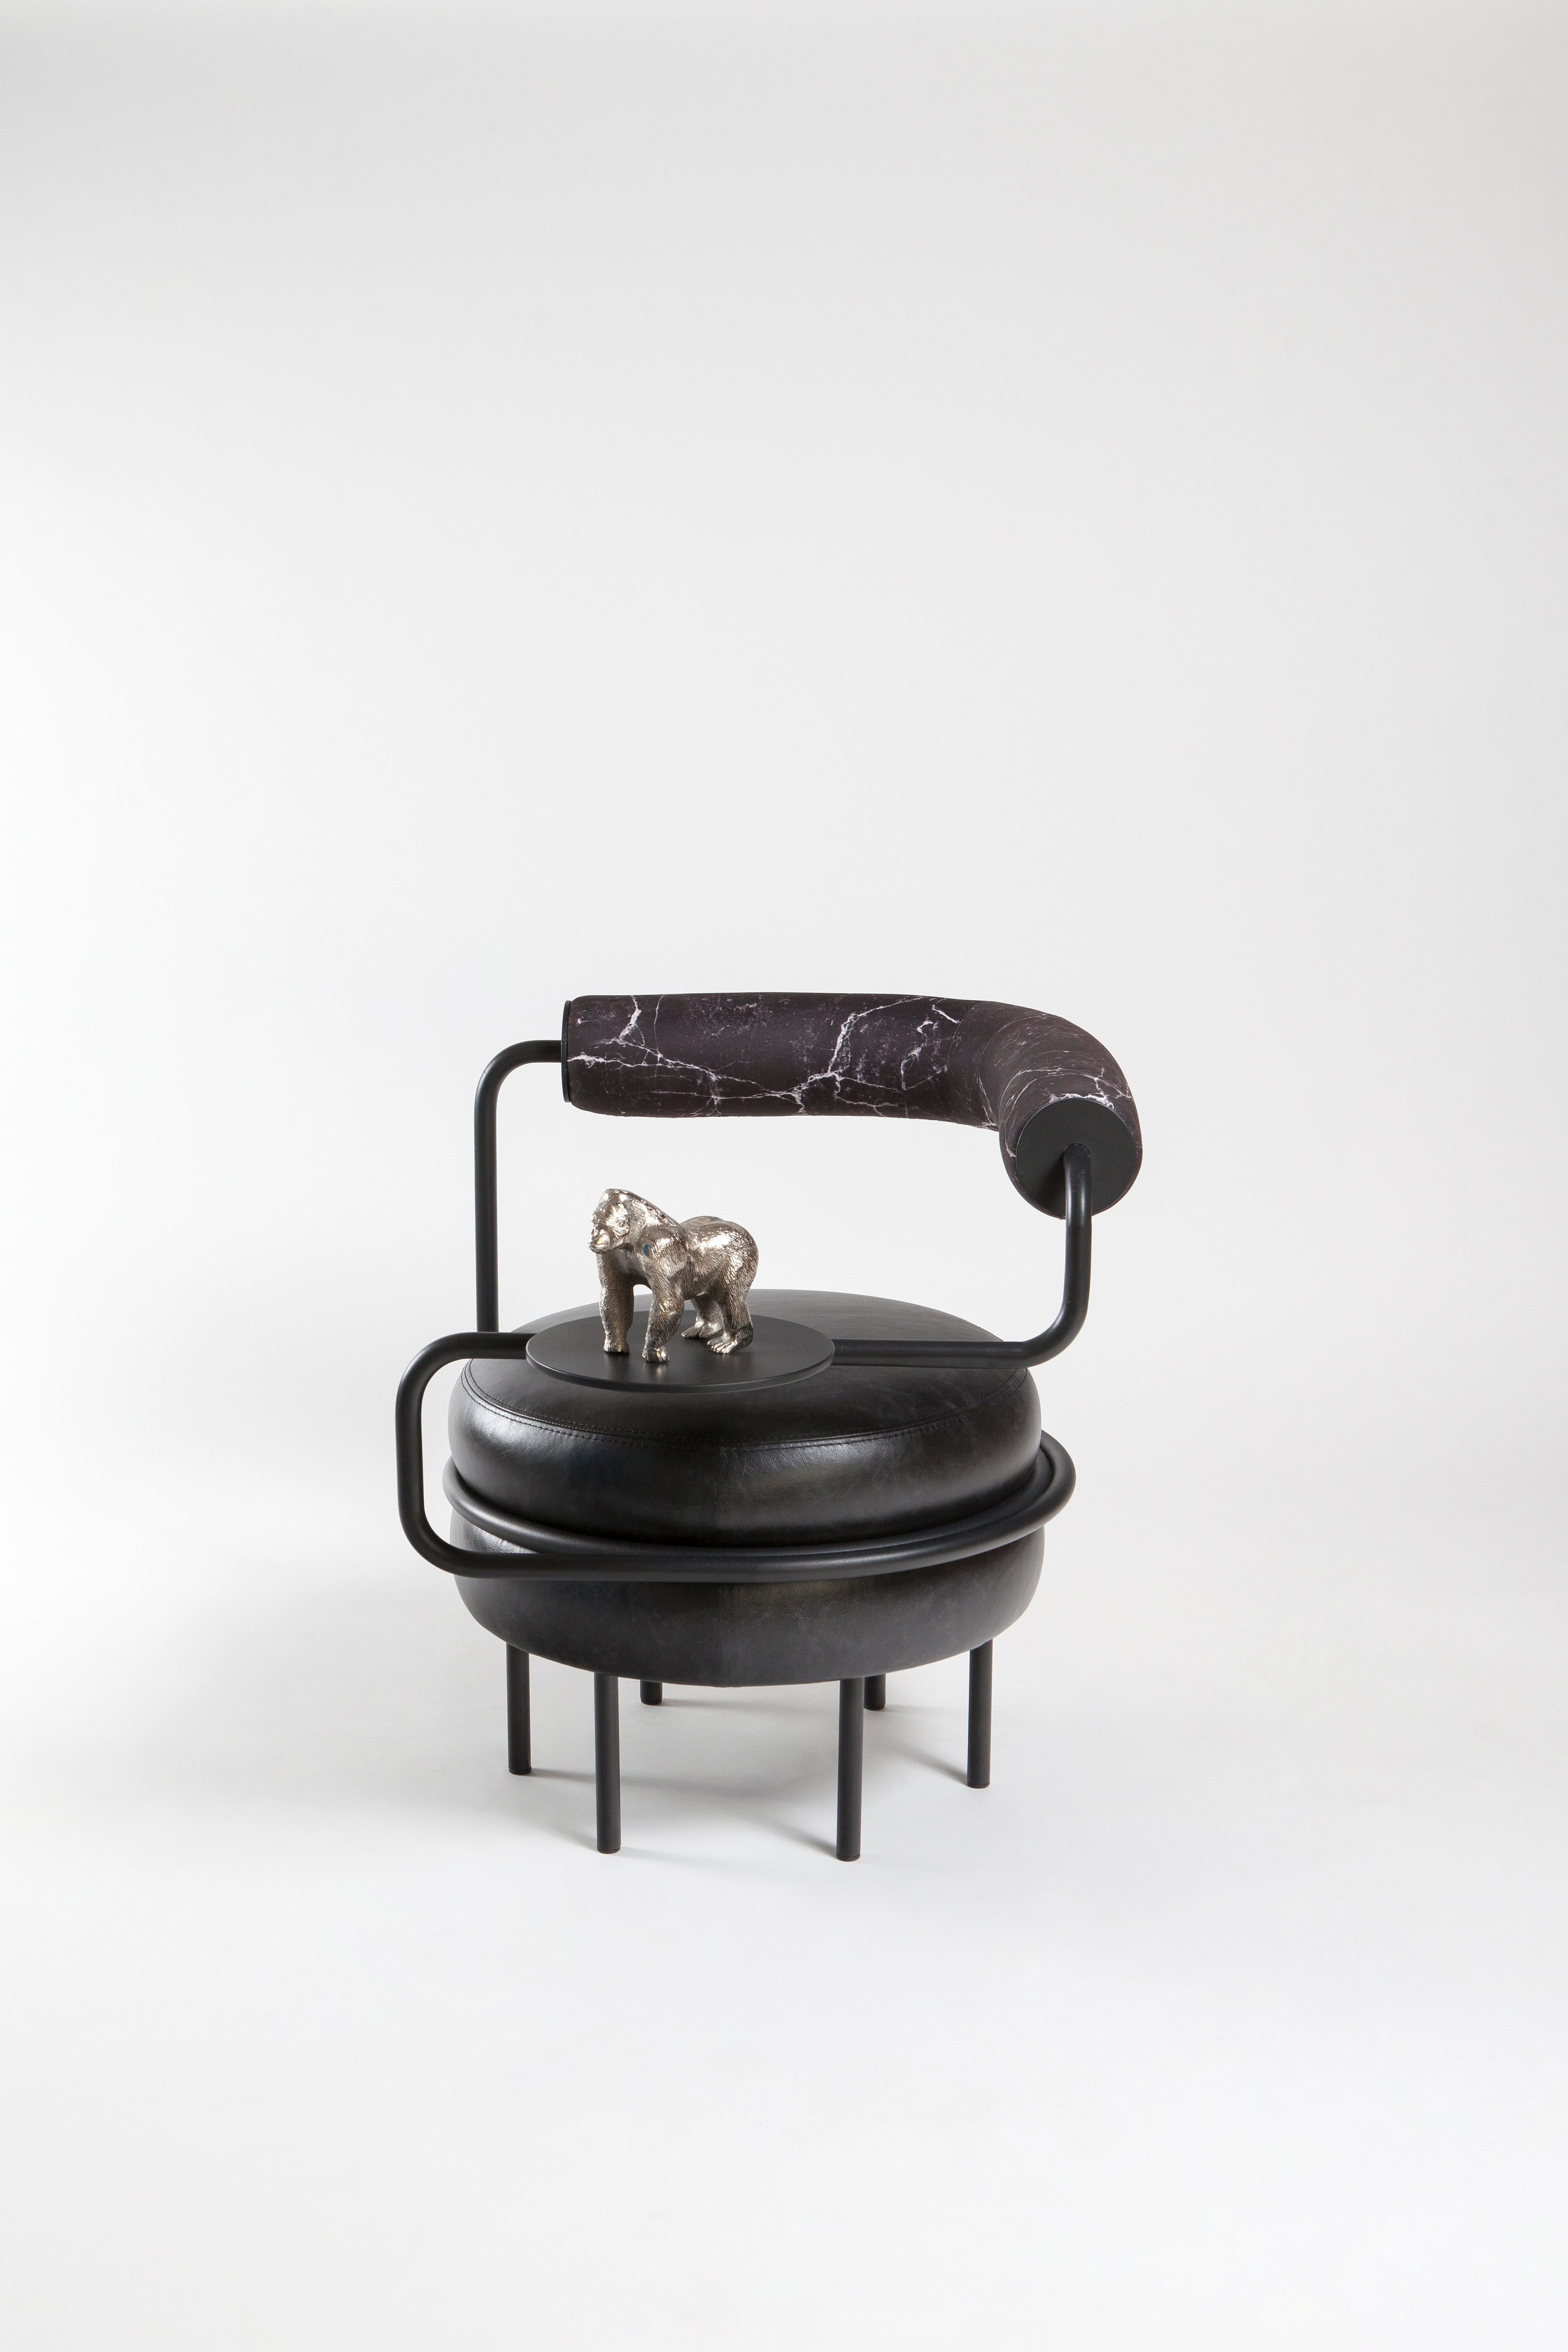 L'interprétation de Macaron par Kontra. Fauteuil confortable de couleur violette.
Le fauteuil en cuir à un bras offre une assise confortable avec sa propre table d'appoint.